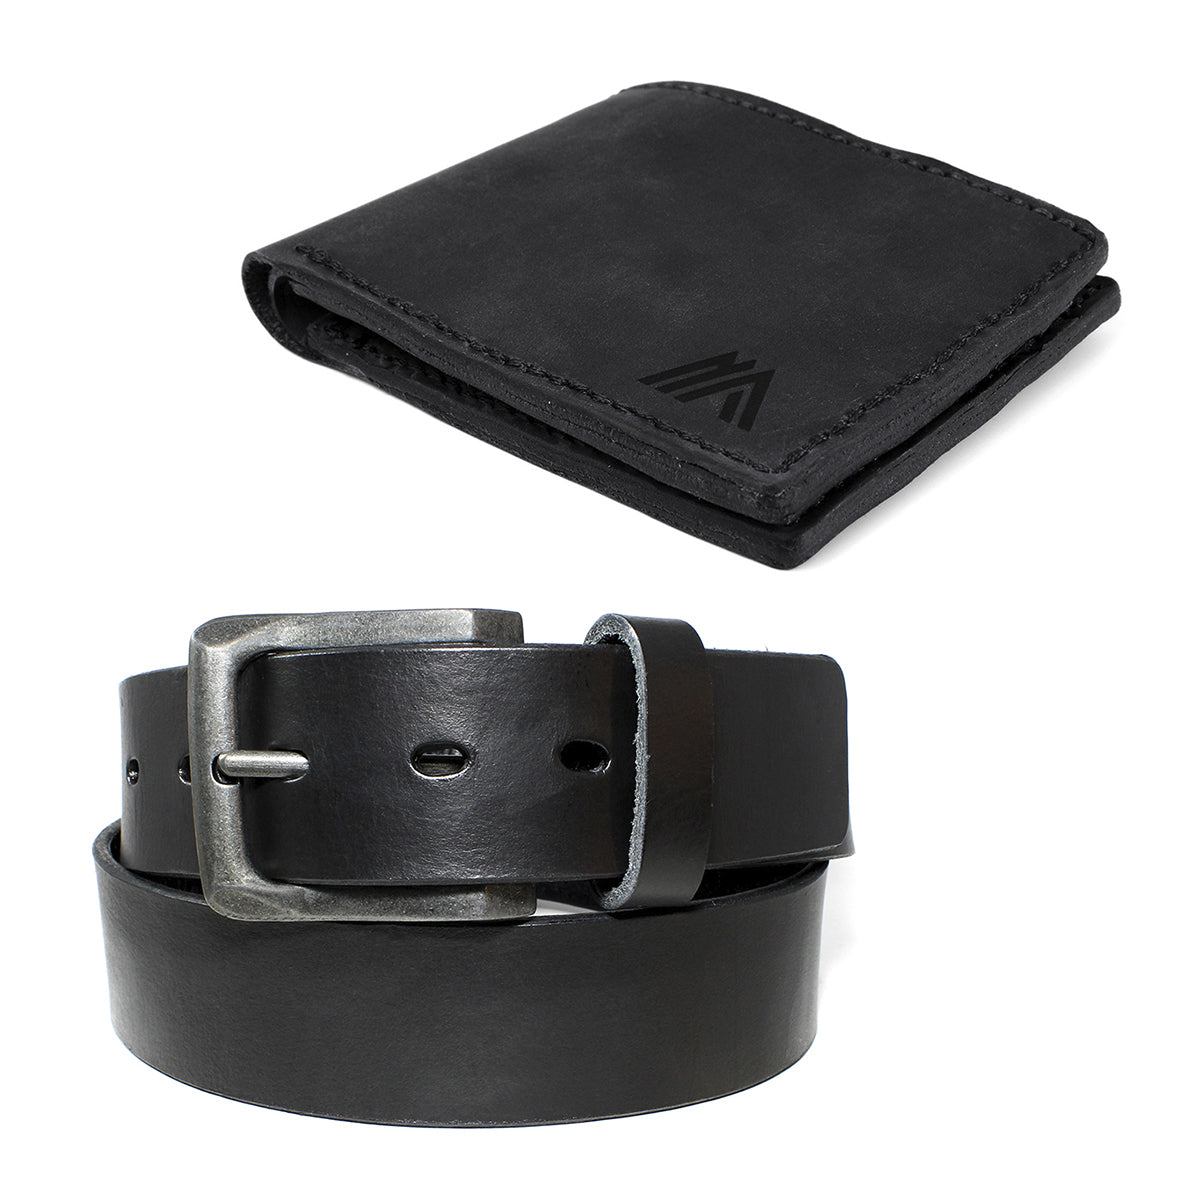 Pack Cinturon Cuero Hombre + Billetera de Cuero Negro